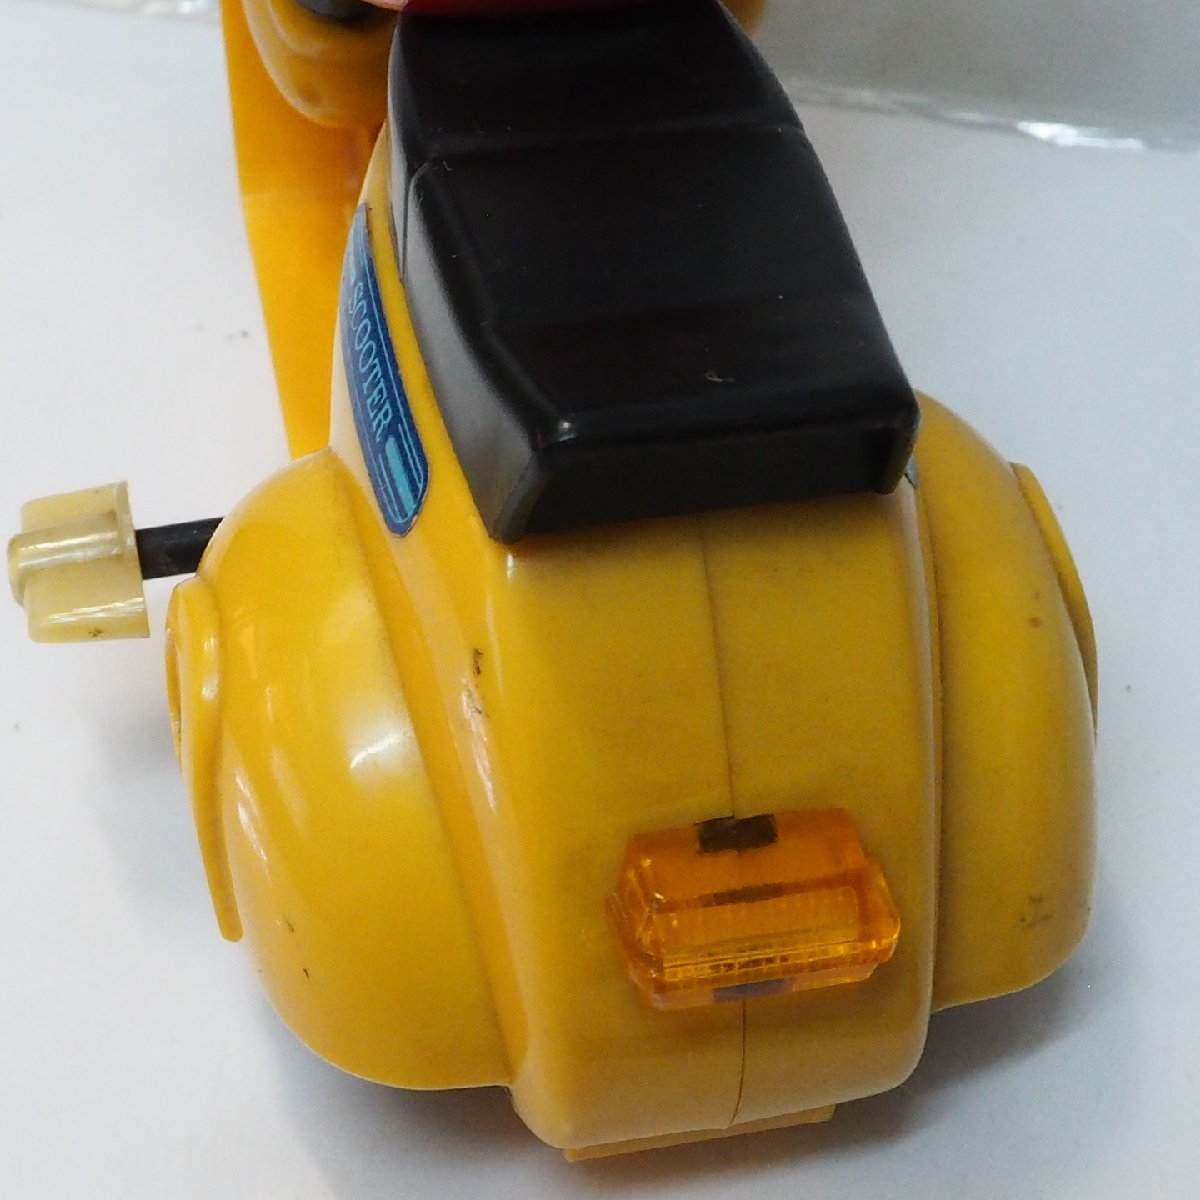  больше рисовое поле магазин [ Mickey * мышь zen мой скутер желтый цвет желтый мотоцикл 2 колесо машина рабочее состояние подтверждено ] сделано в Японии пластиковый миникар # Masudaya [ б/у ]0862